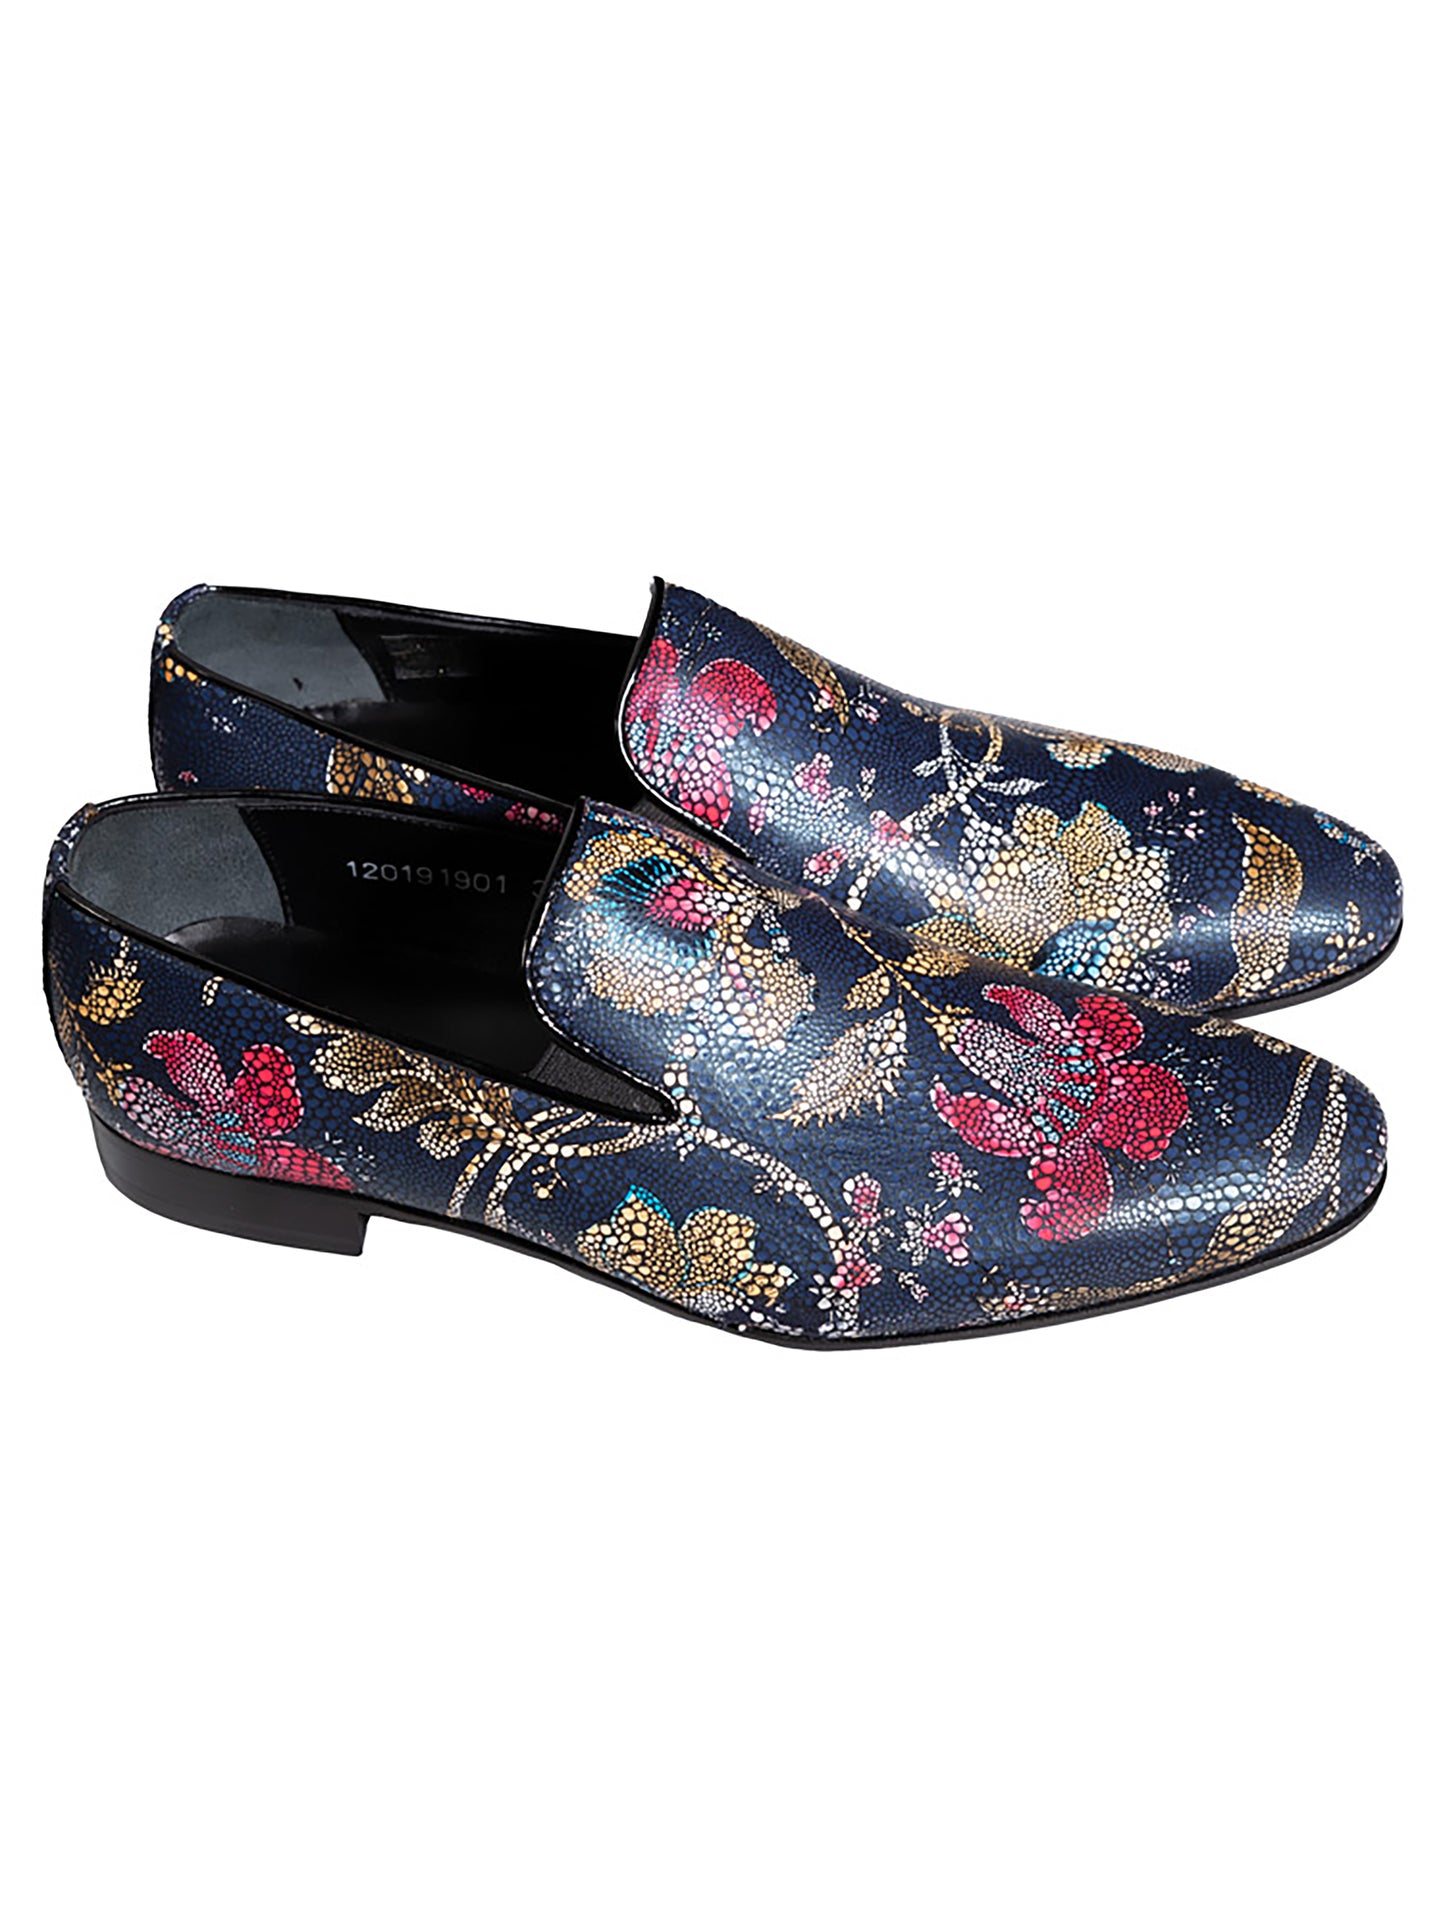 Floral blue shoes